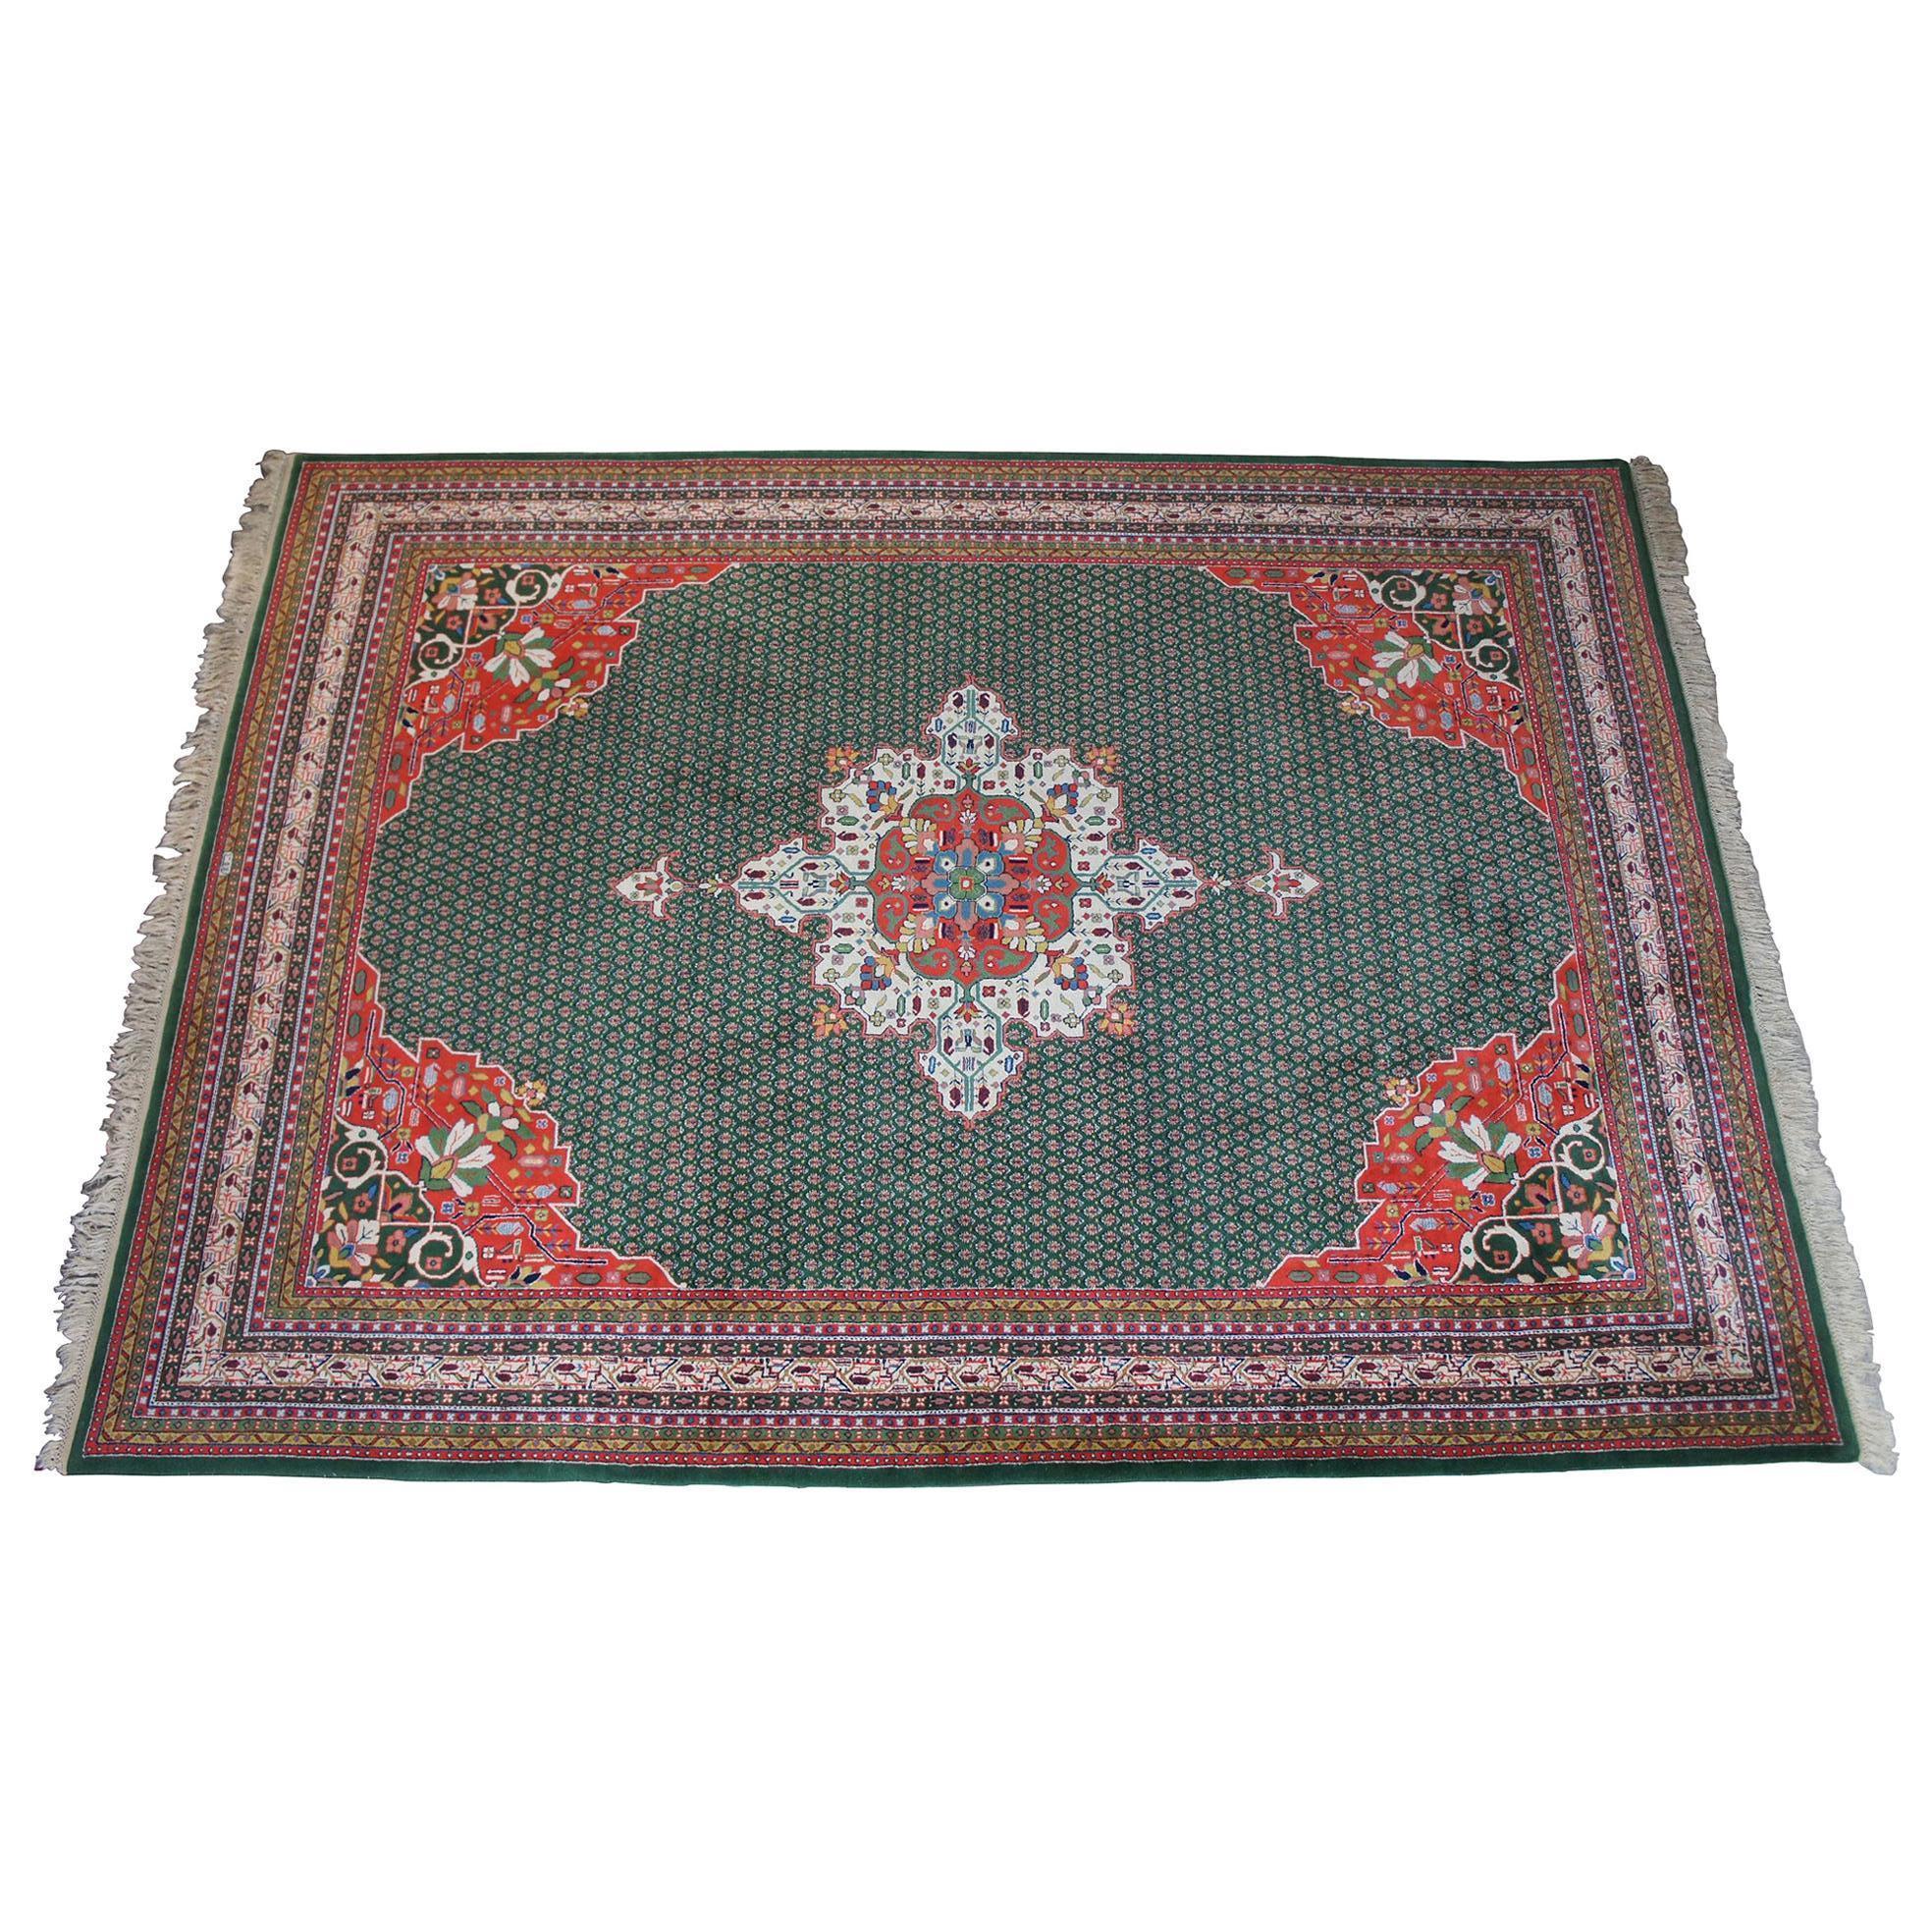 Vintage Kaimuri Teppich aus 100% Schurwolle, hergestellt in Indien. Design/One Tabriz. Das Design Mahi bezieht sich auf ein bekanntes Muster persischer Teppiche aus der Stadt Täbris und ihrer Umgebung im Nordwesten Irans. Das Design basiert auf